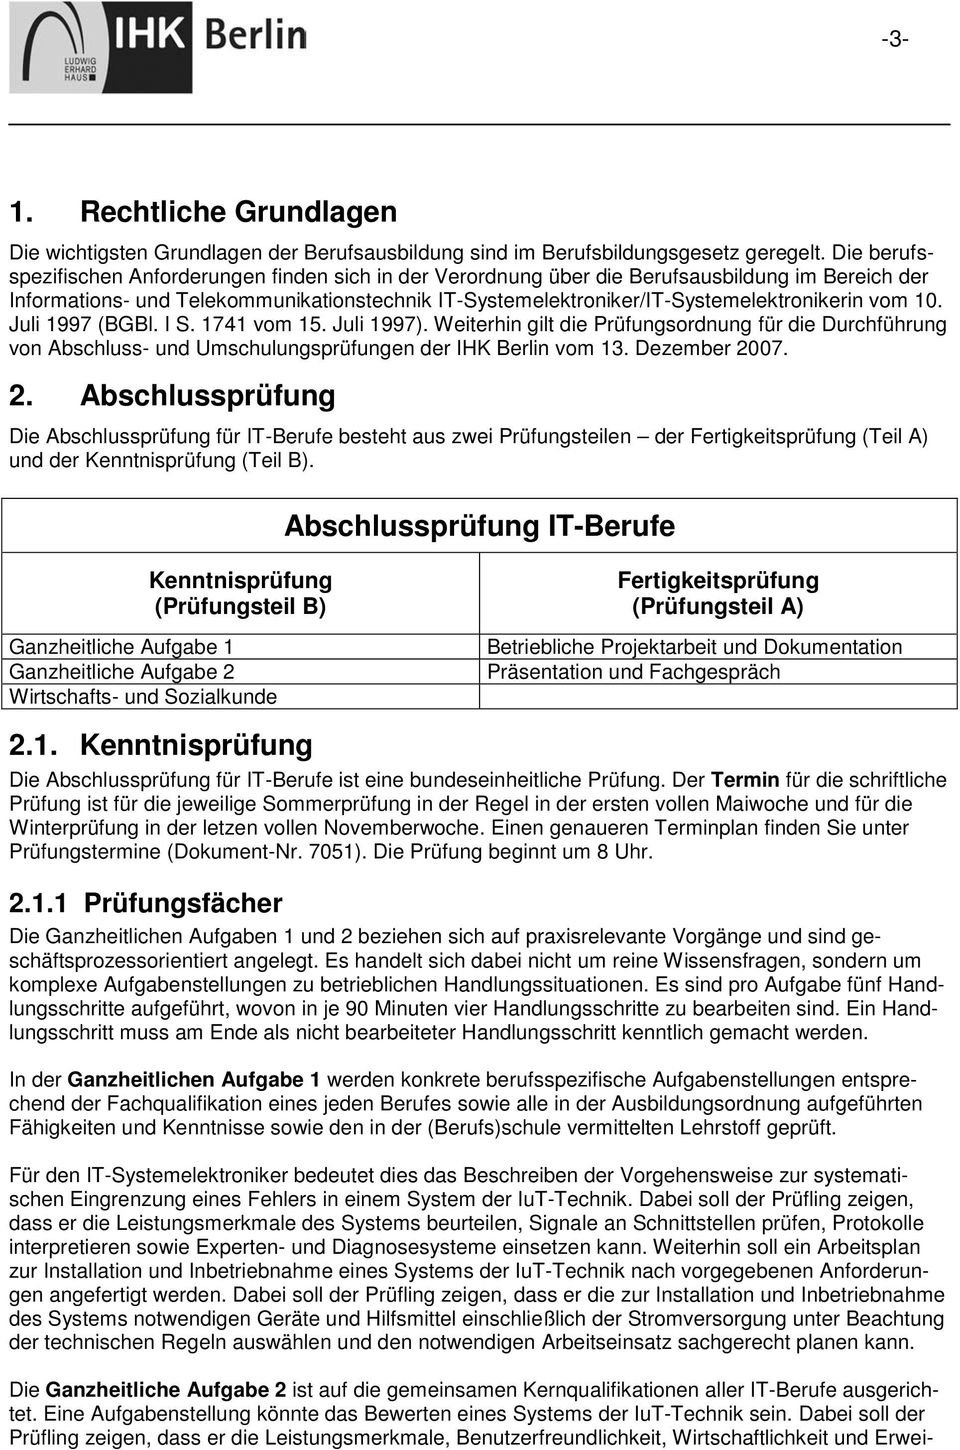 vom 10. Juli 1997 (BGBl. I S. 1741 vom 15. Juli 1997). Weiterhin gilt die Prüfungsordnung für die Durchführung von Abschluss- und Umschulungsprüfungen der IHK Berlin vom 13. Dezember 20